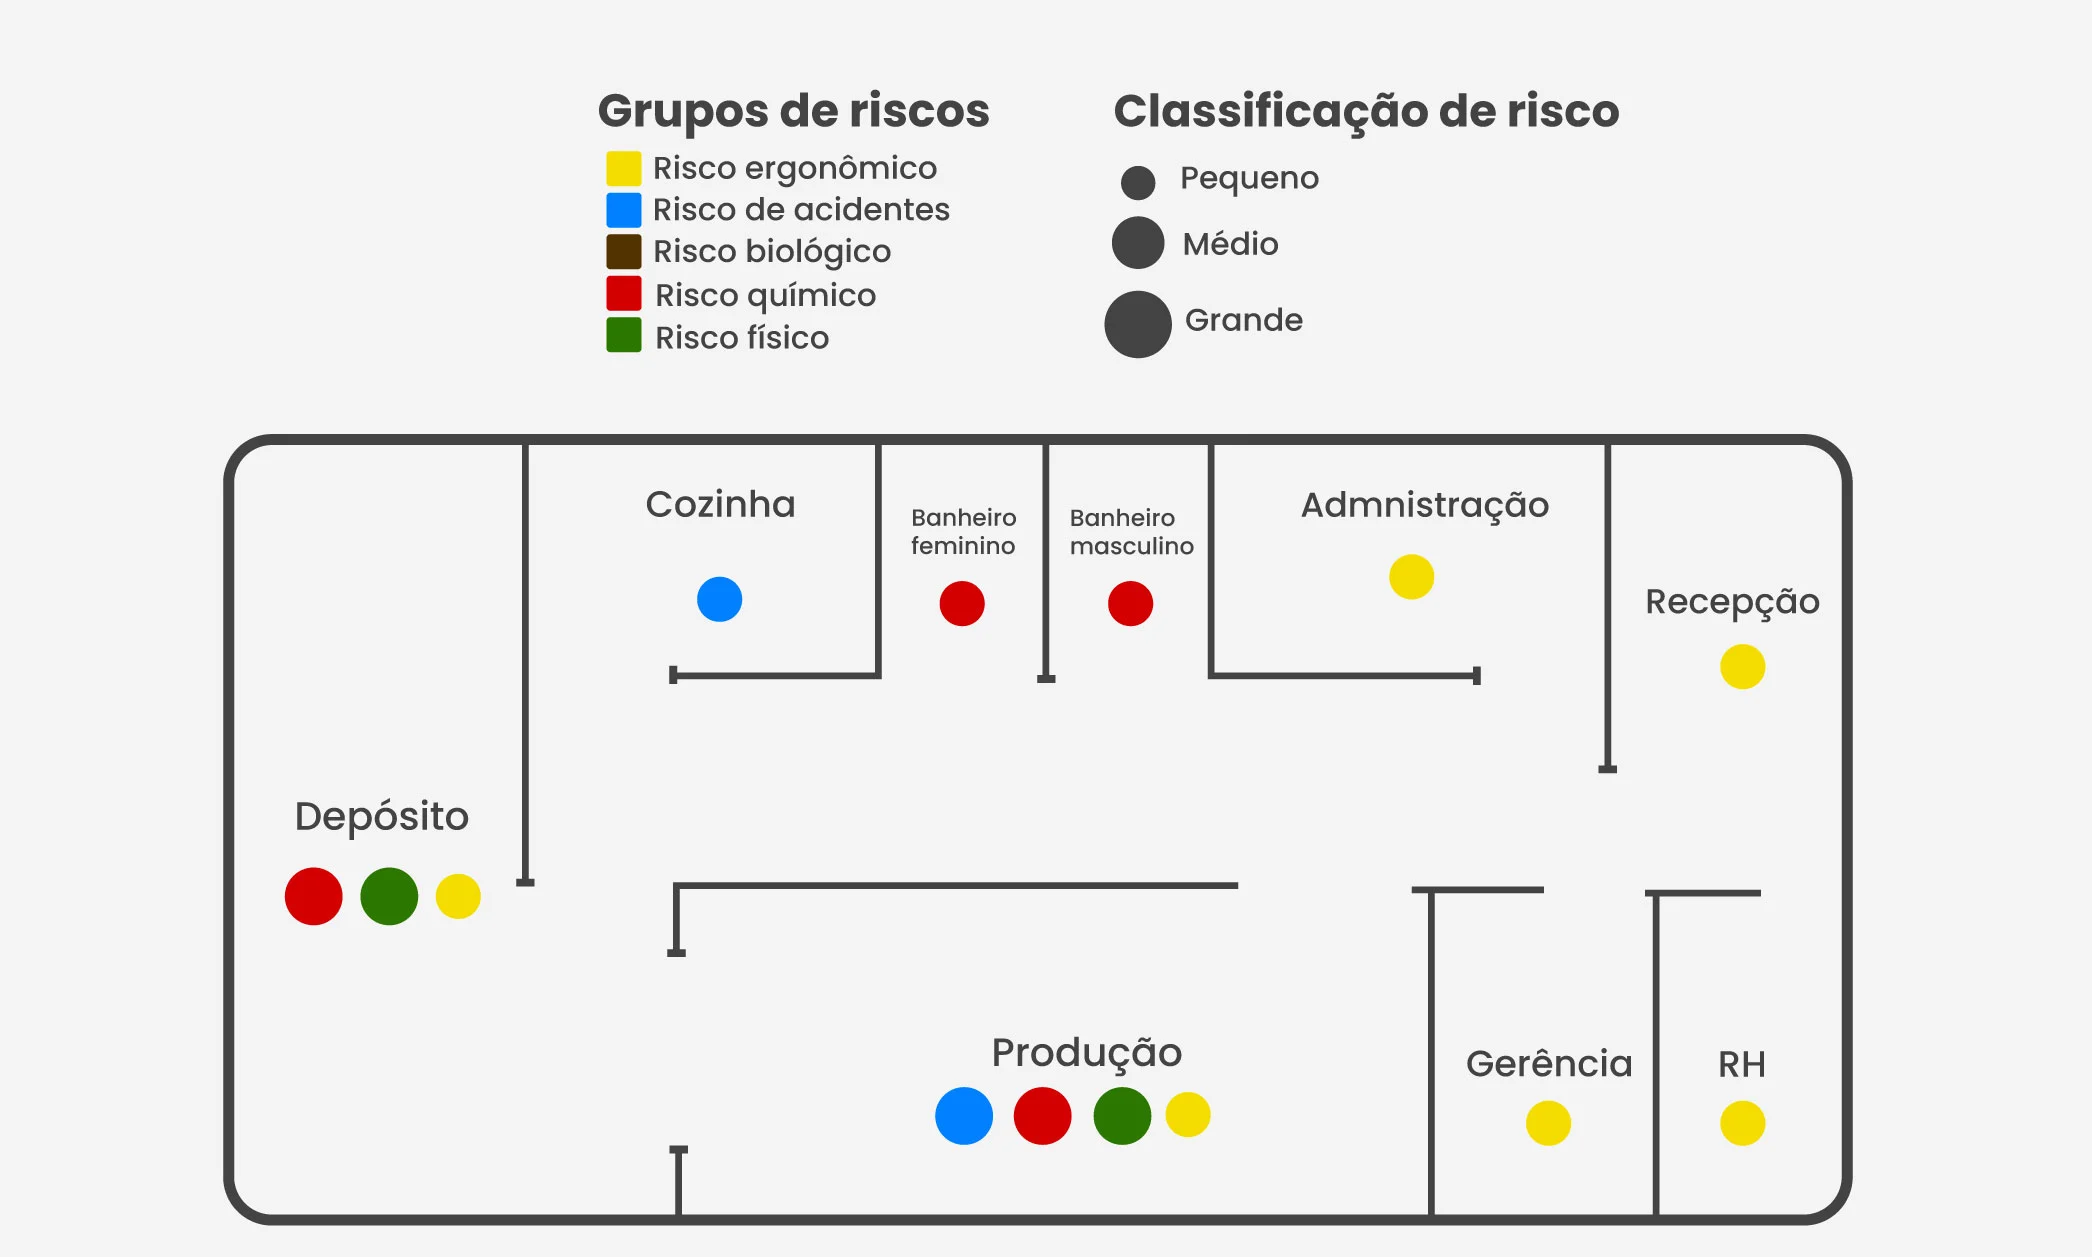 Mapa de riscos de uma empresa de serviços, com círculos e cores categorizando e representando a intensidade dos riscos de cada área.